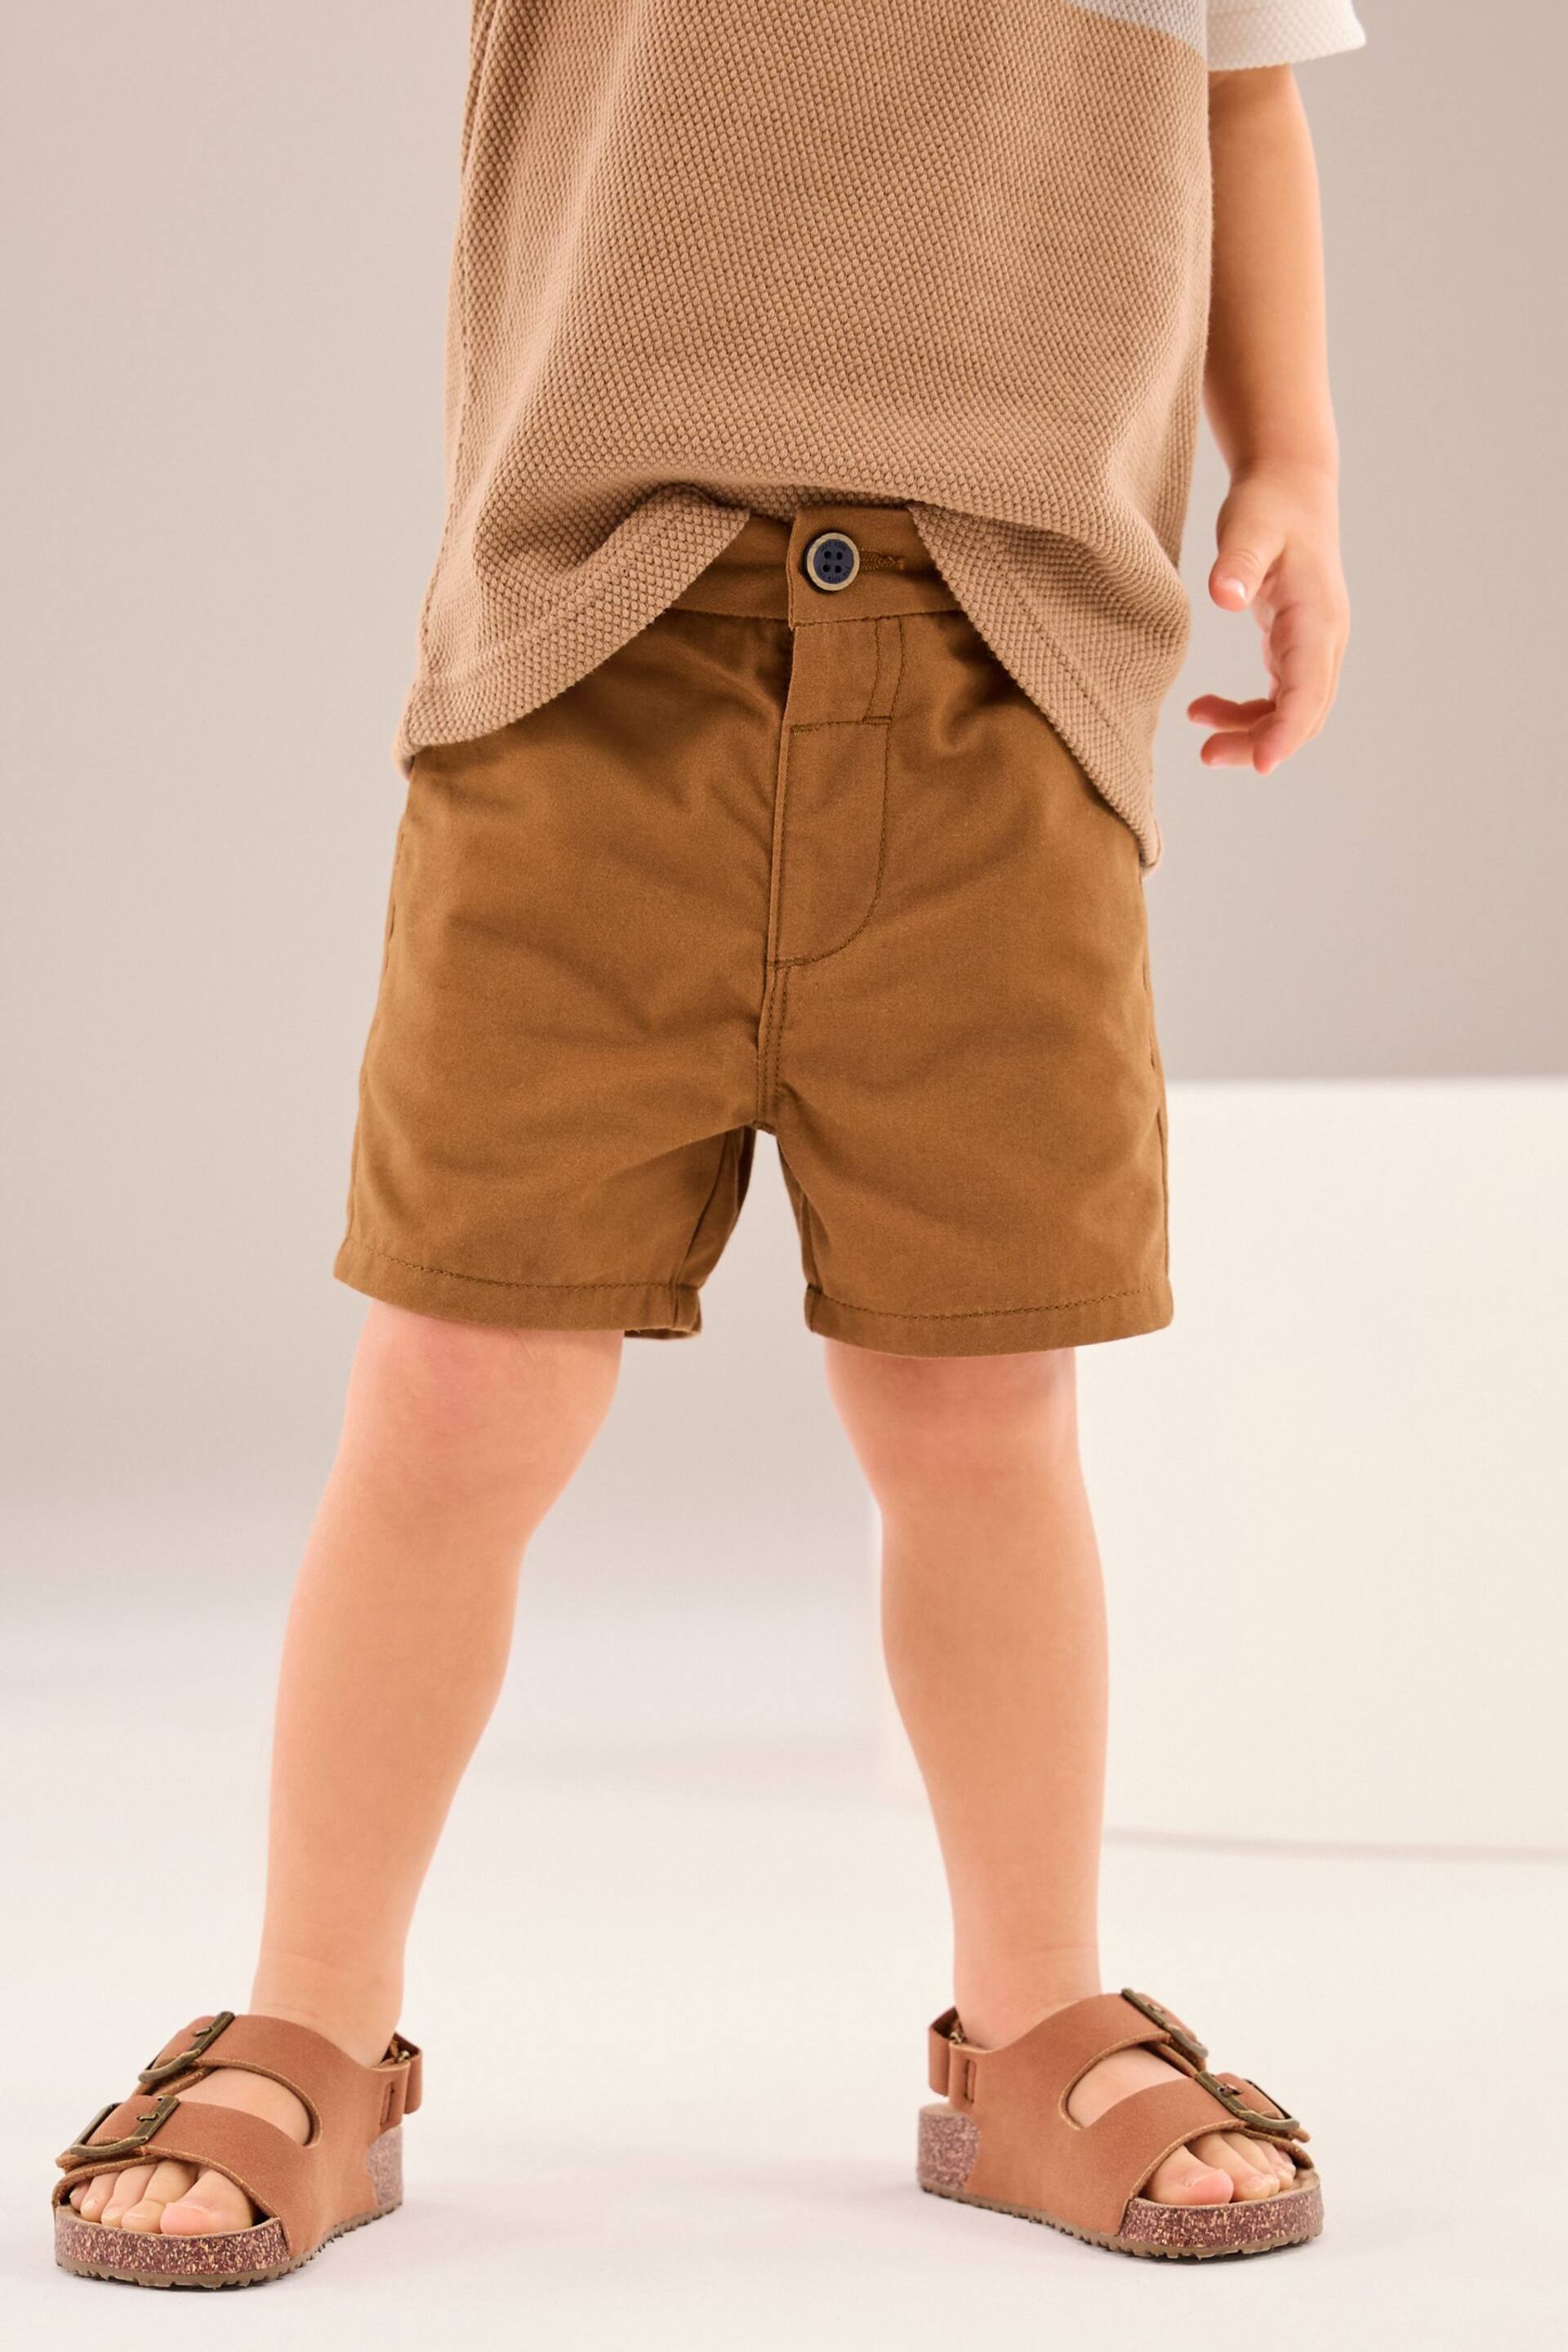 Tan Brown Chinos Shorts (3mths-7yrs) - Image 1 of 7